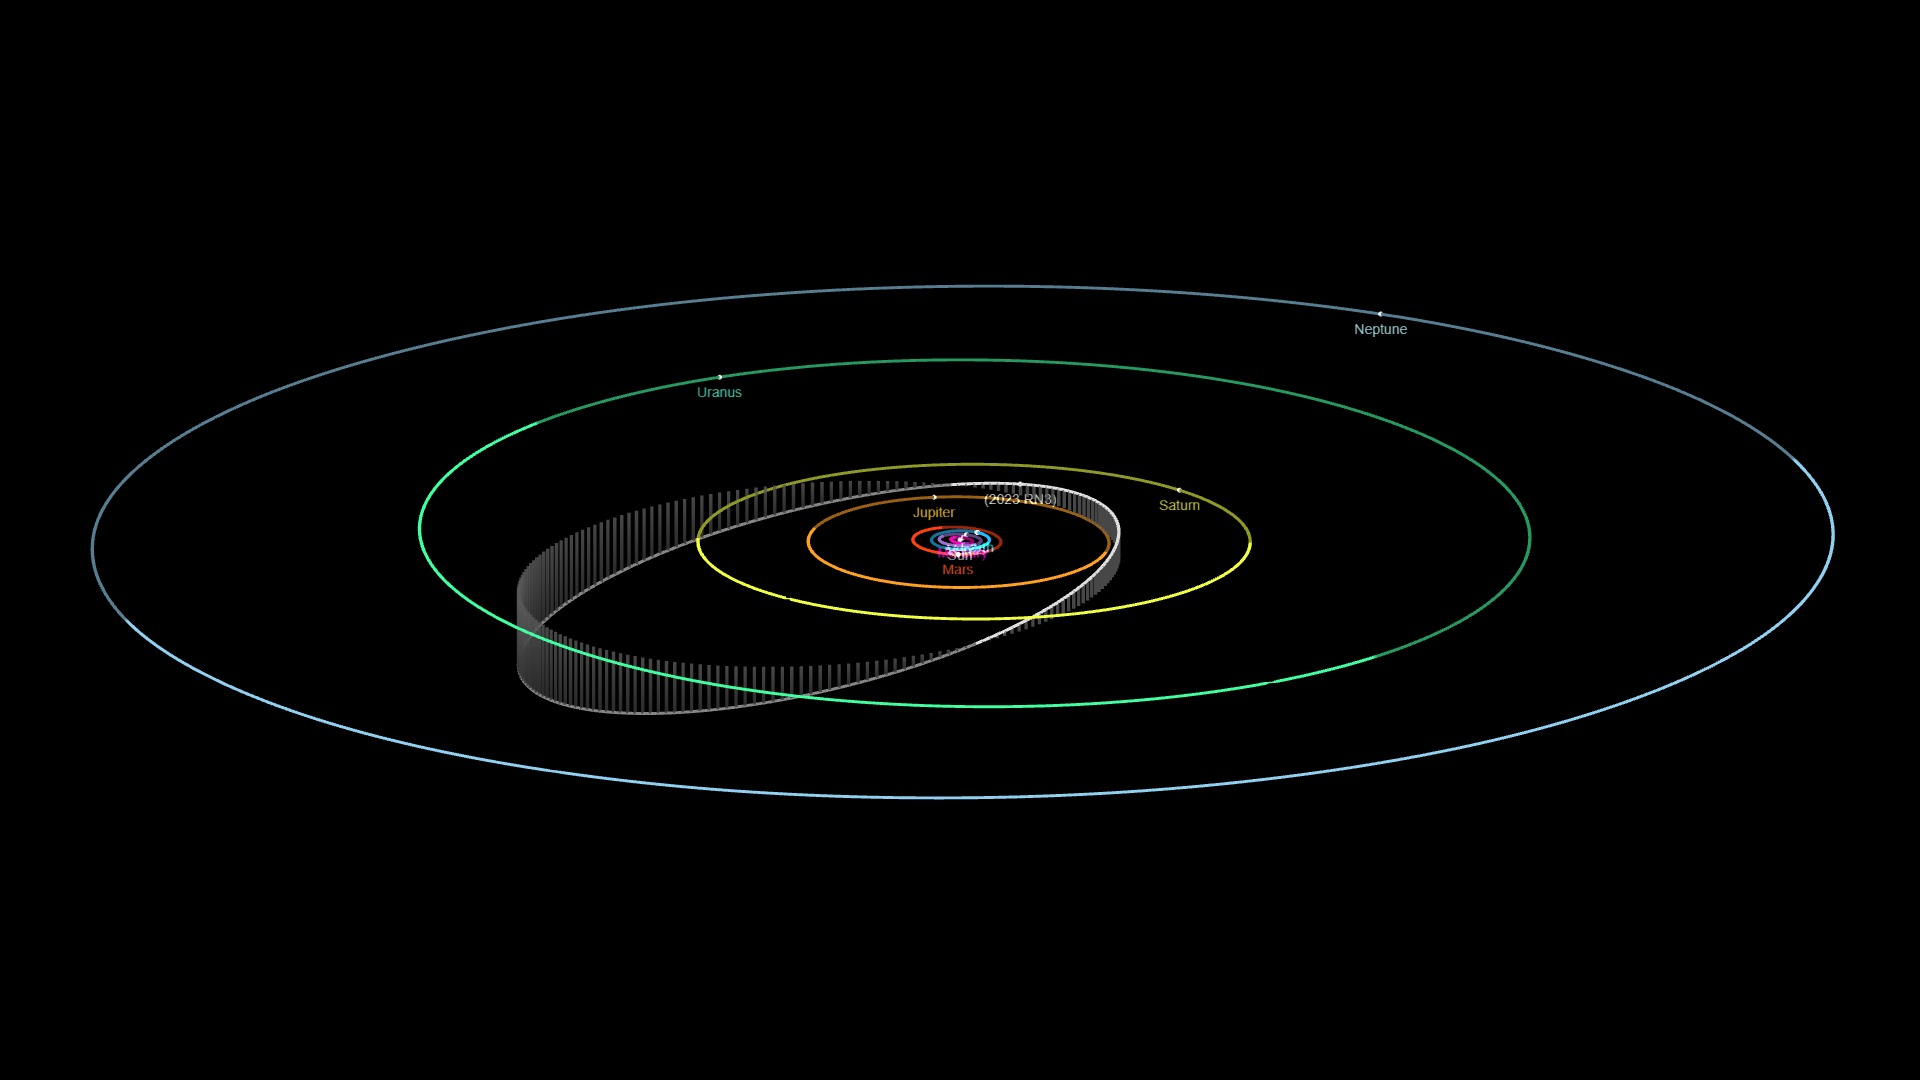 Asteroids/2023 RN3.jpg